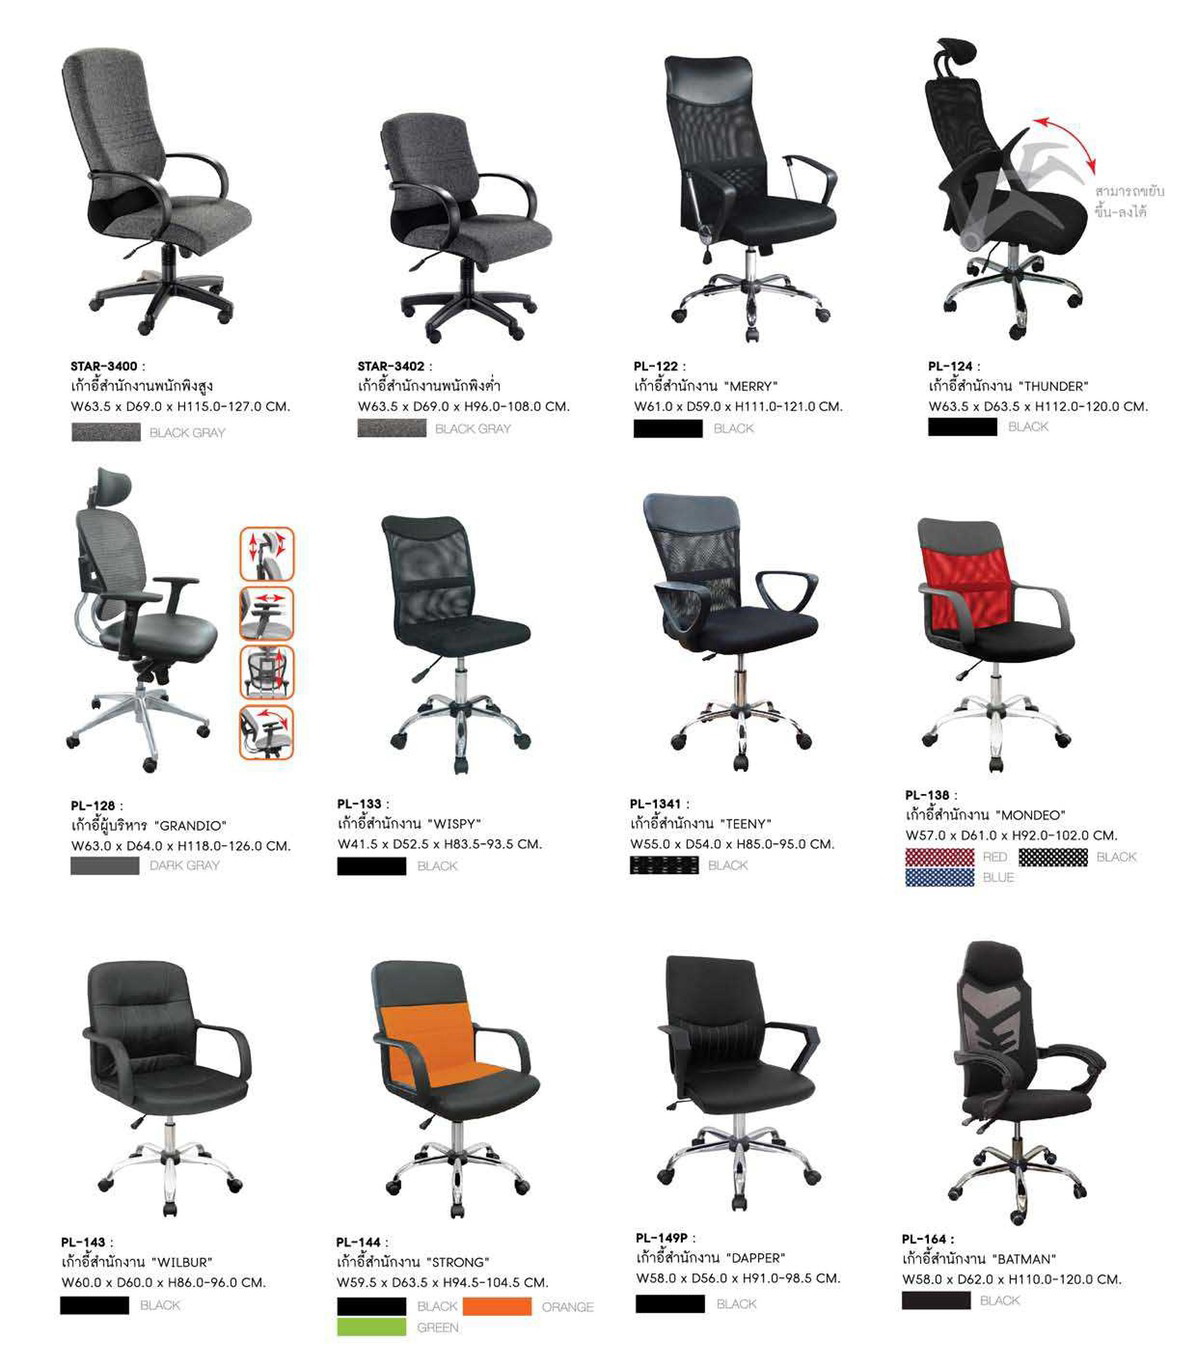 13071::PL-144::เก้าอี้สำนักงาน STRONG หนัง PVC ขนาด W 595 X D 635 X H 945-1045 MM. มีเลือก 3 สี สีดำ,สีส้ม,สีเขียว  เก้าอี้สำนักงาน ชัวร์